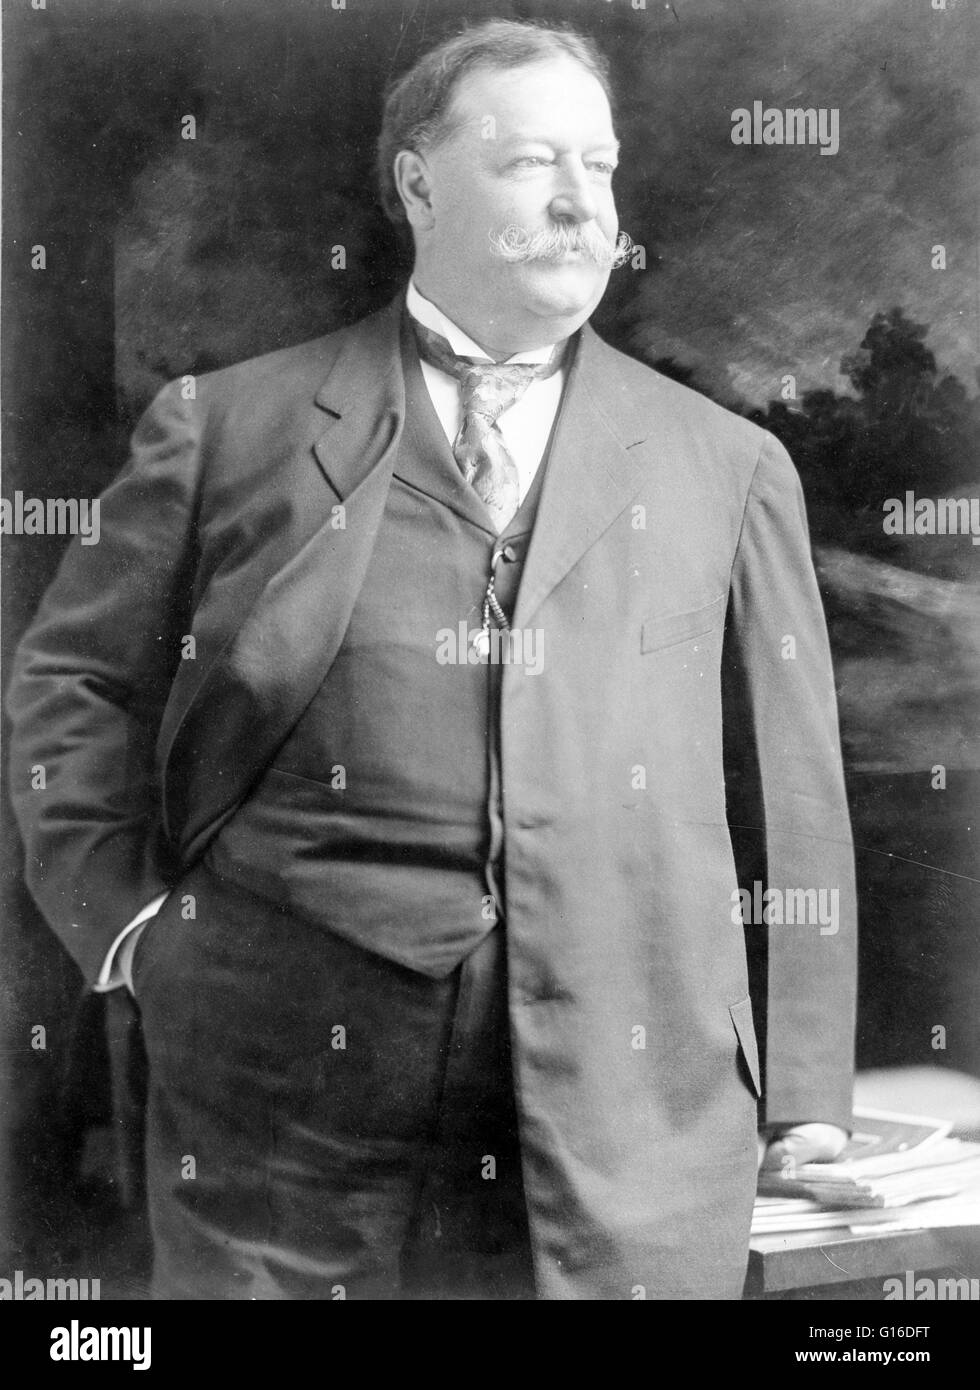 Sekretär des Krieges Taft fotografiert im Jahre 1907. Taft (15. September 1857 - 8. März 1930) war der 27. Präsident der Vereinigten Staaten (1909-1913) und später der zehnten Oberrichter der Vereinigten Staaten (1921-1930). Er ist die einzige Person zu haben Stockfoto